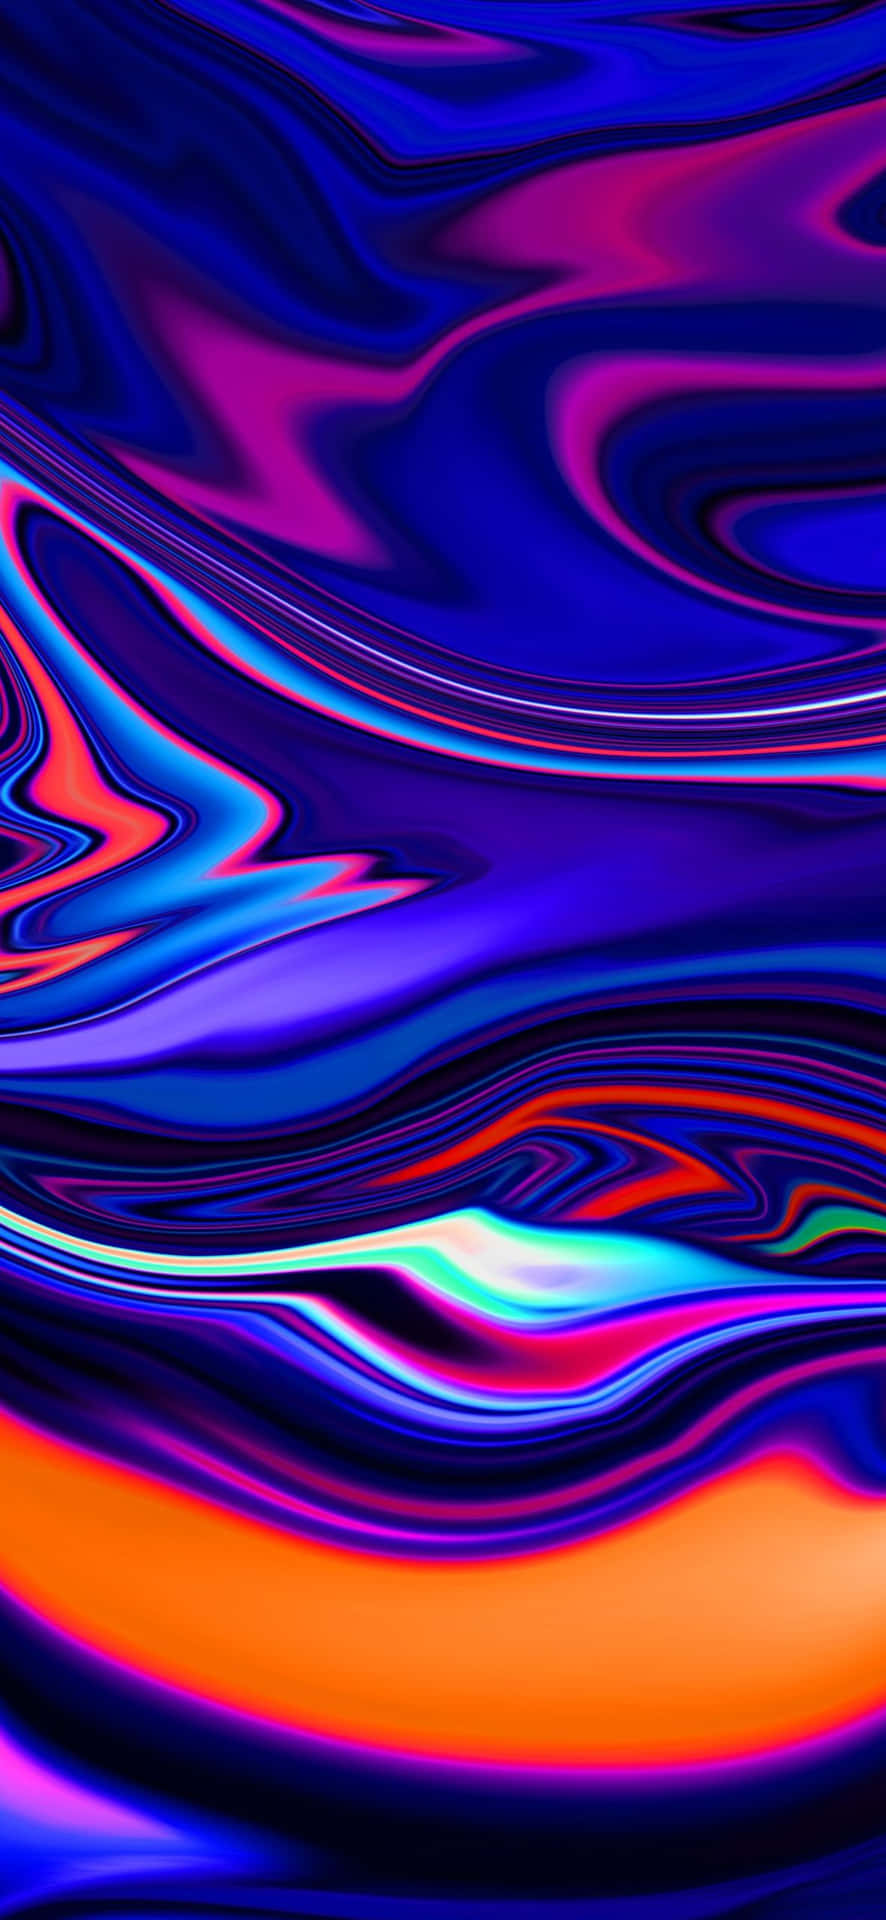 Vibrant Abstract Liquid Waves Wallpaper